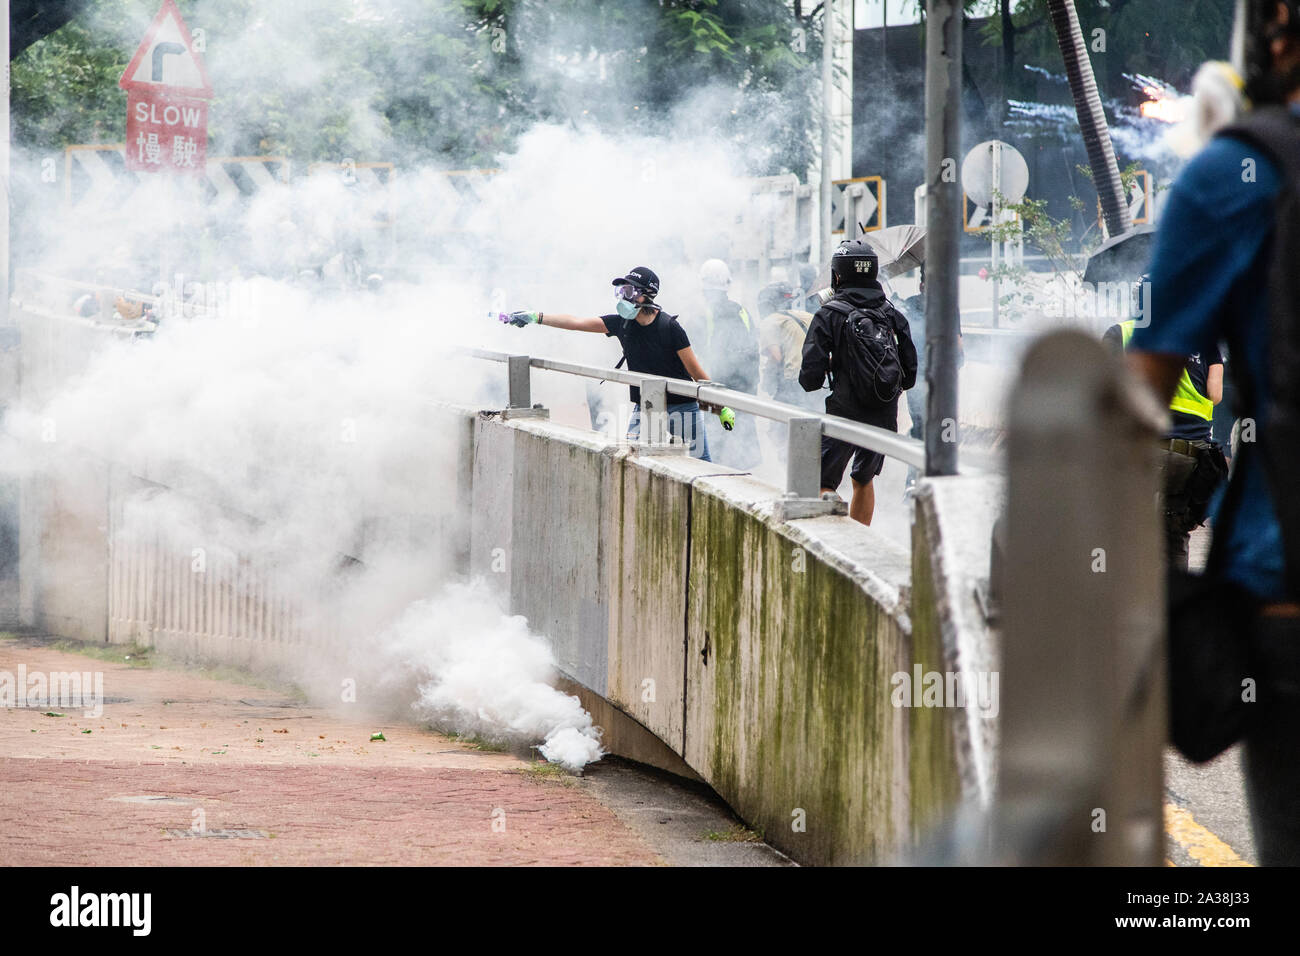 Un manifestant tente d'éteindre avec de l'eau gaz lacrymogènes lors de la manifestation.entrer dans le 18ème week-end d'agitation civile, les manifestants ont marché sous la pluie après un masque anti-loi a été adoptée dans le but d'empêcher les manifestations. Les manifestants scandaient des slogans et continué de solliciter de la cinq exigences à satisfaire. Manifestants ont affronté la police anti-émeute et ont été frappés avec des gaz lacrymogènes, des balles en caoutchouc, et un canon à eau jusqu'à ce que plusieurs ont finalement été arrêtés. Banque D'Images